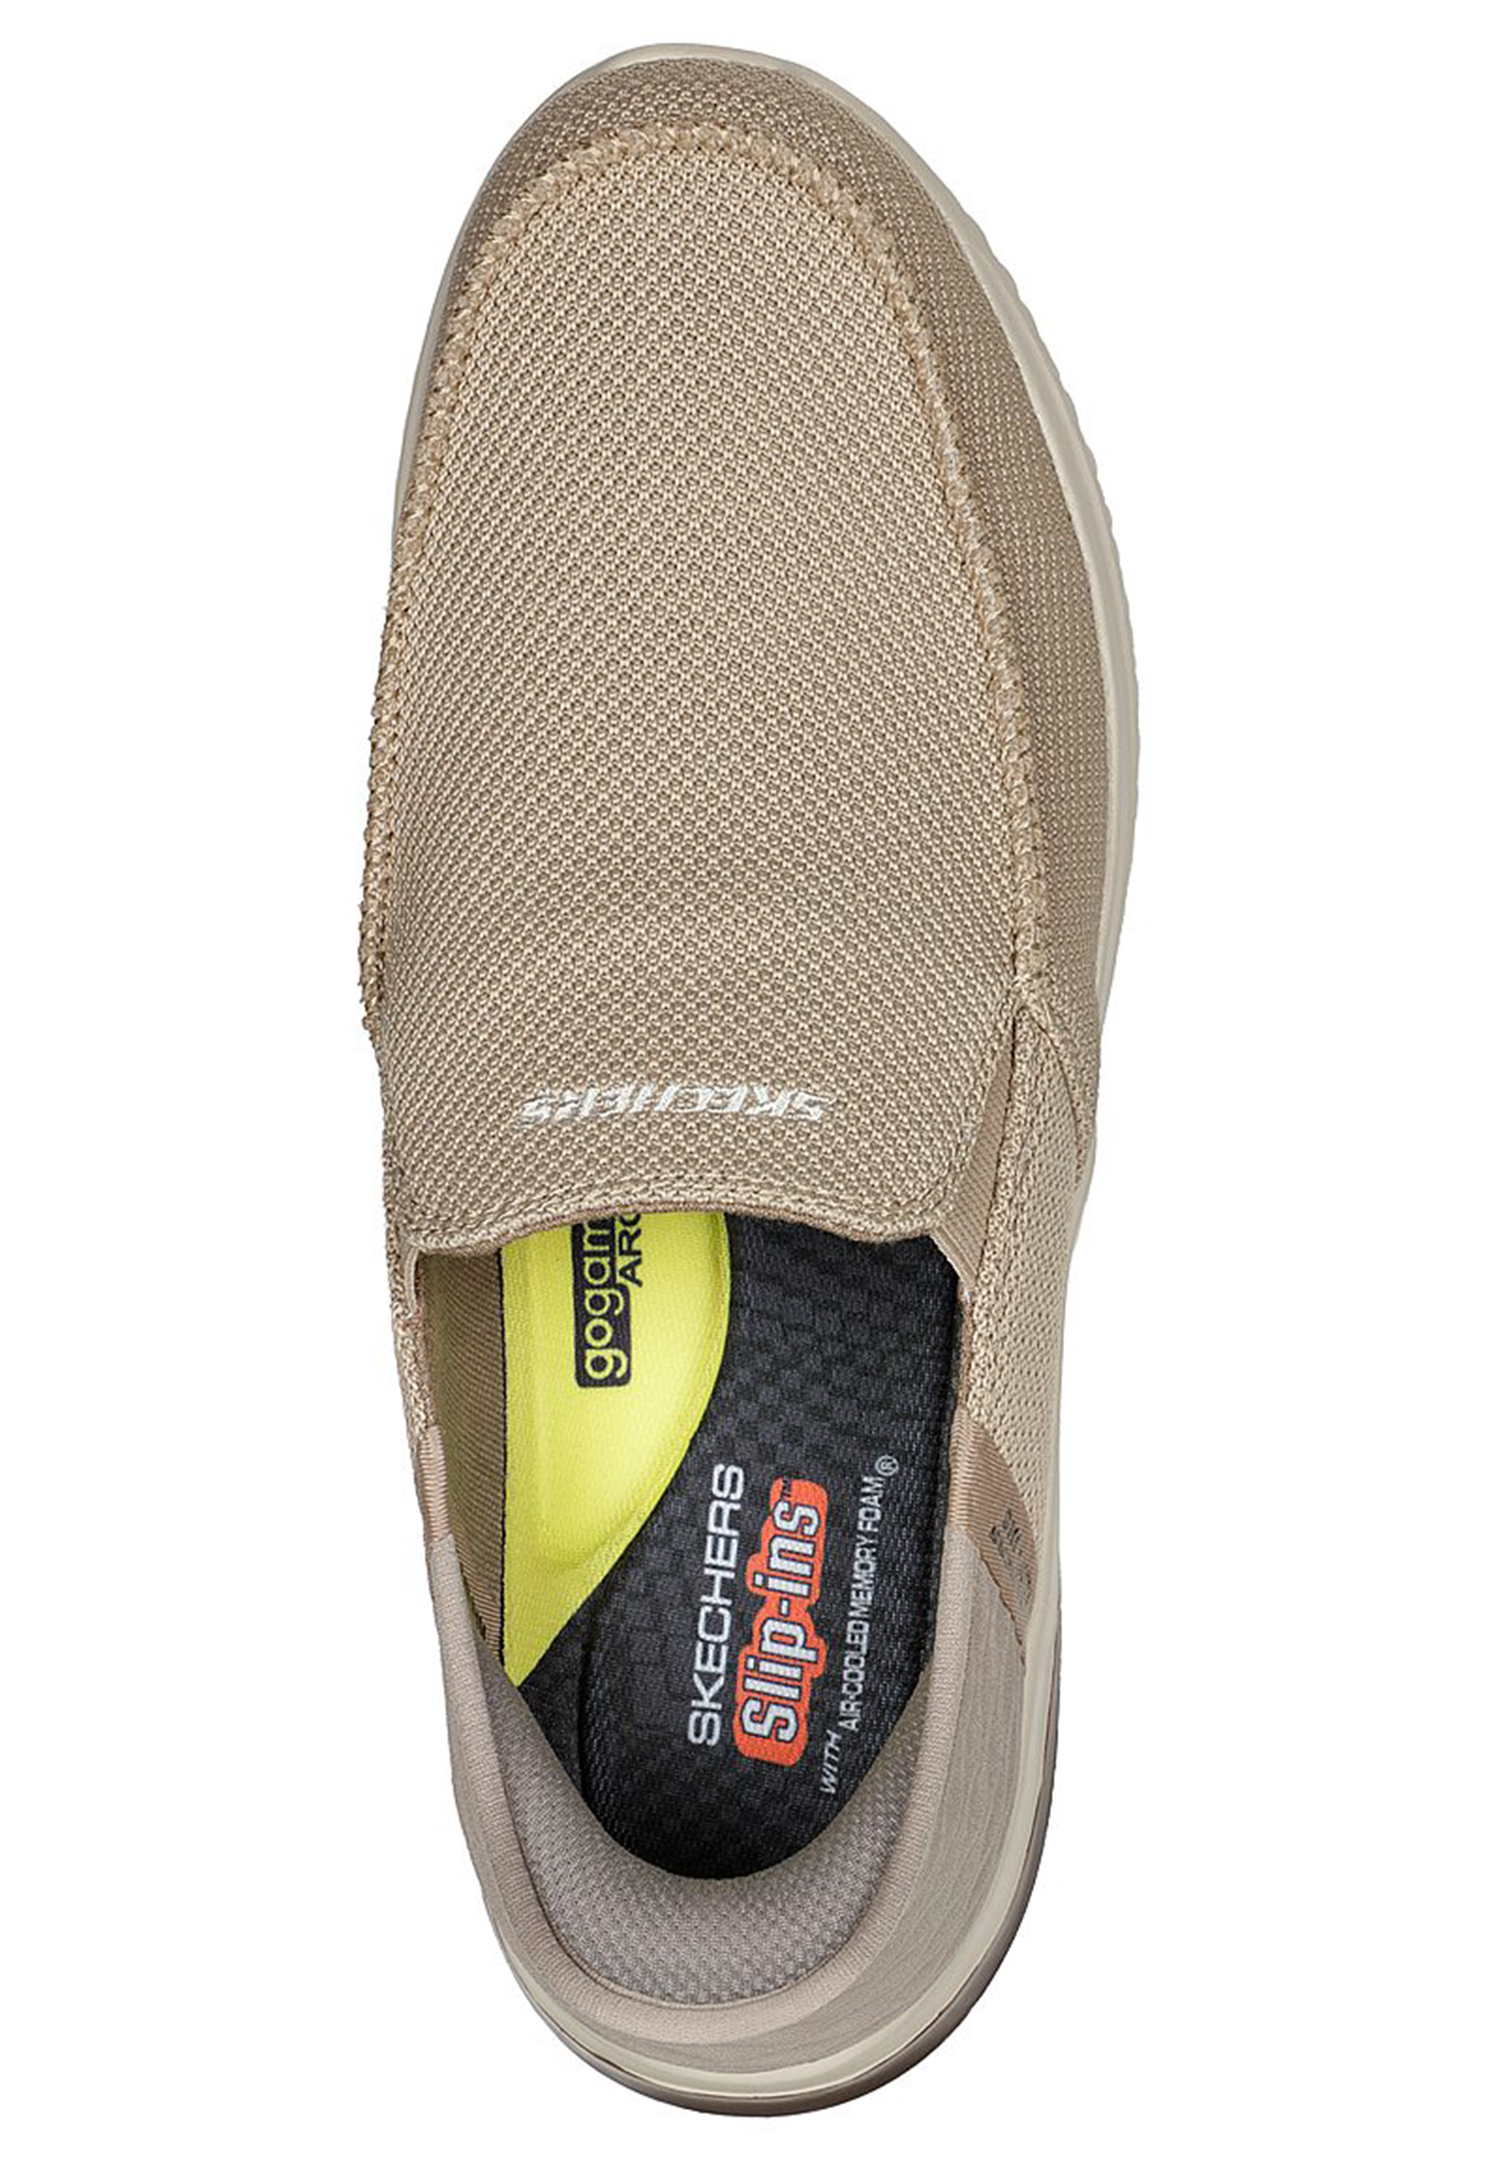 Skechers Delson 3.0 - CABRINO Herren Slip ins - Sneaker Pantolette 210604 TPE taupe